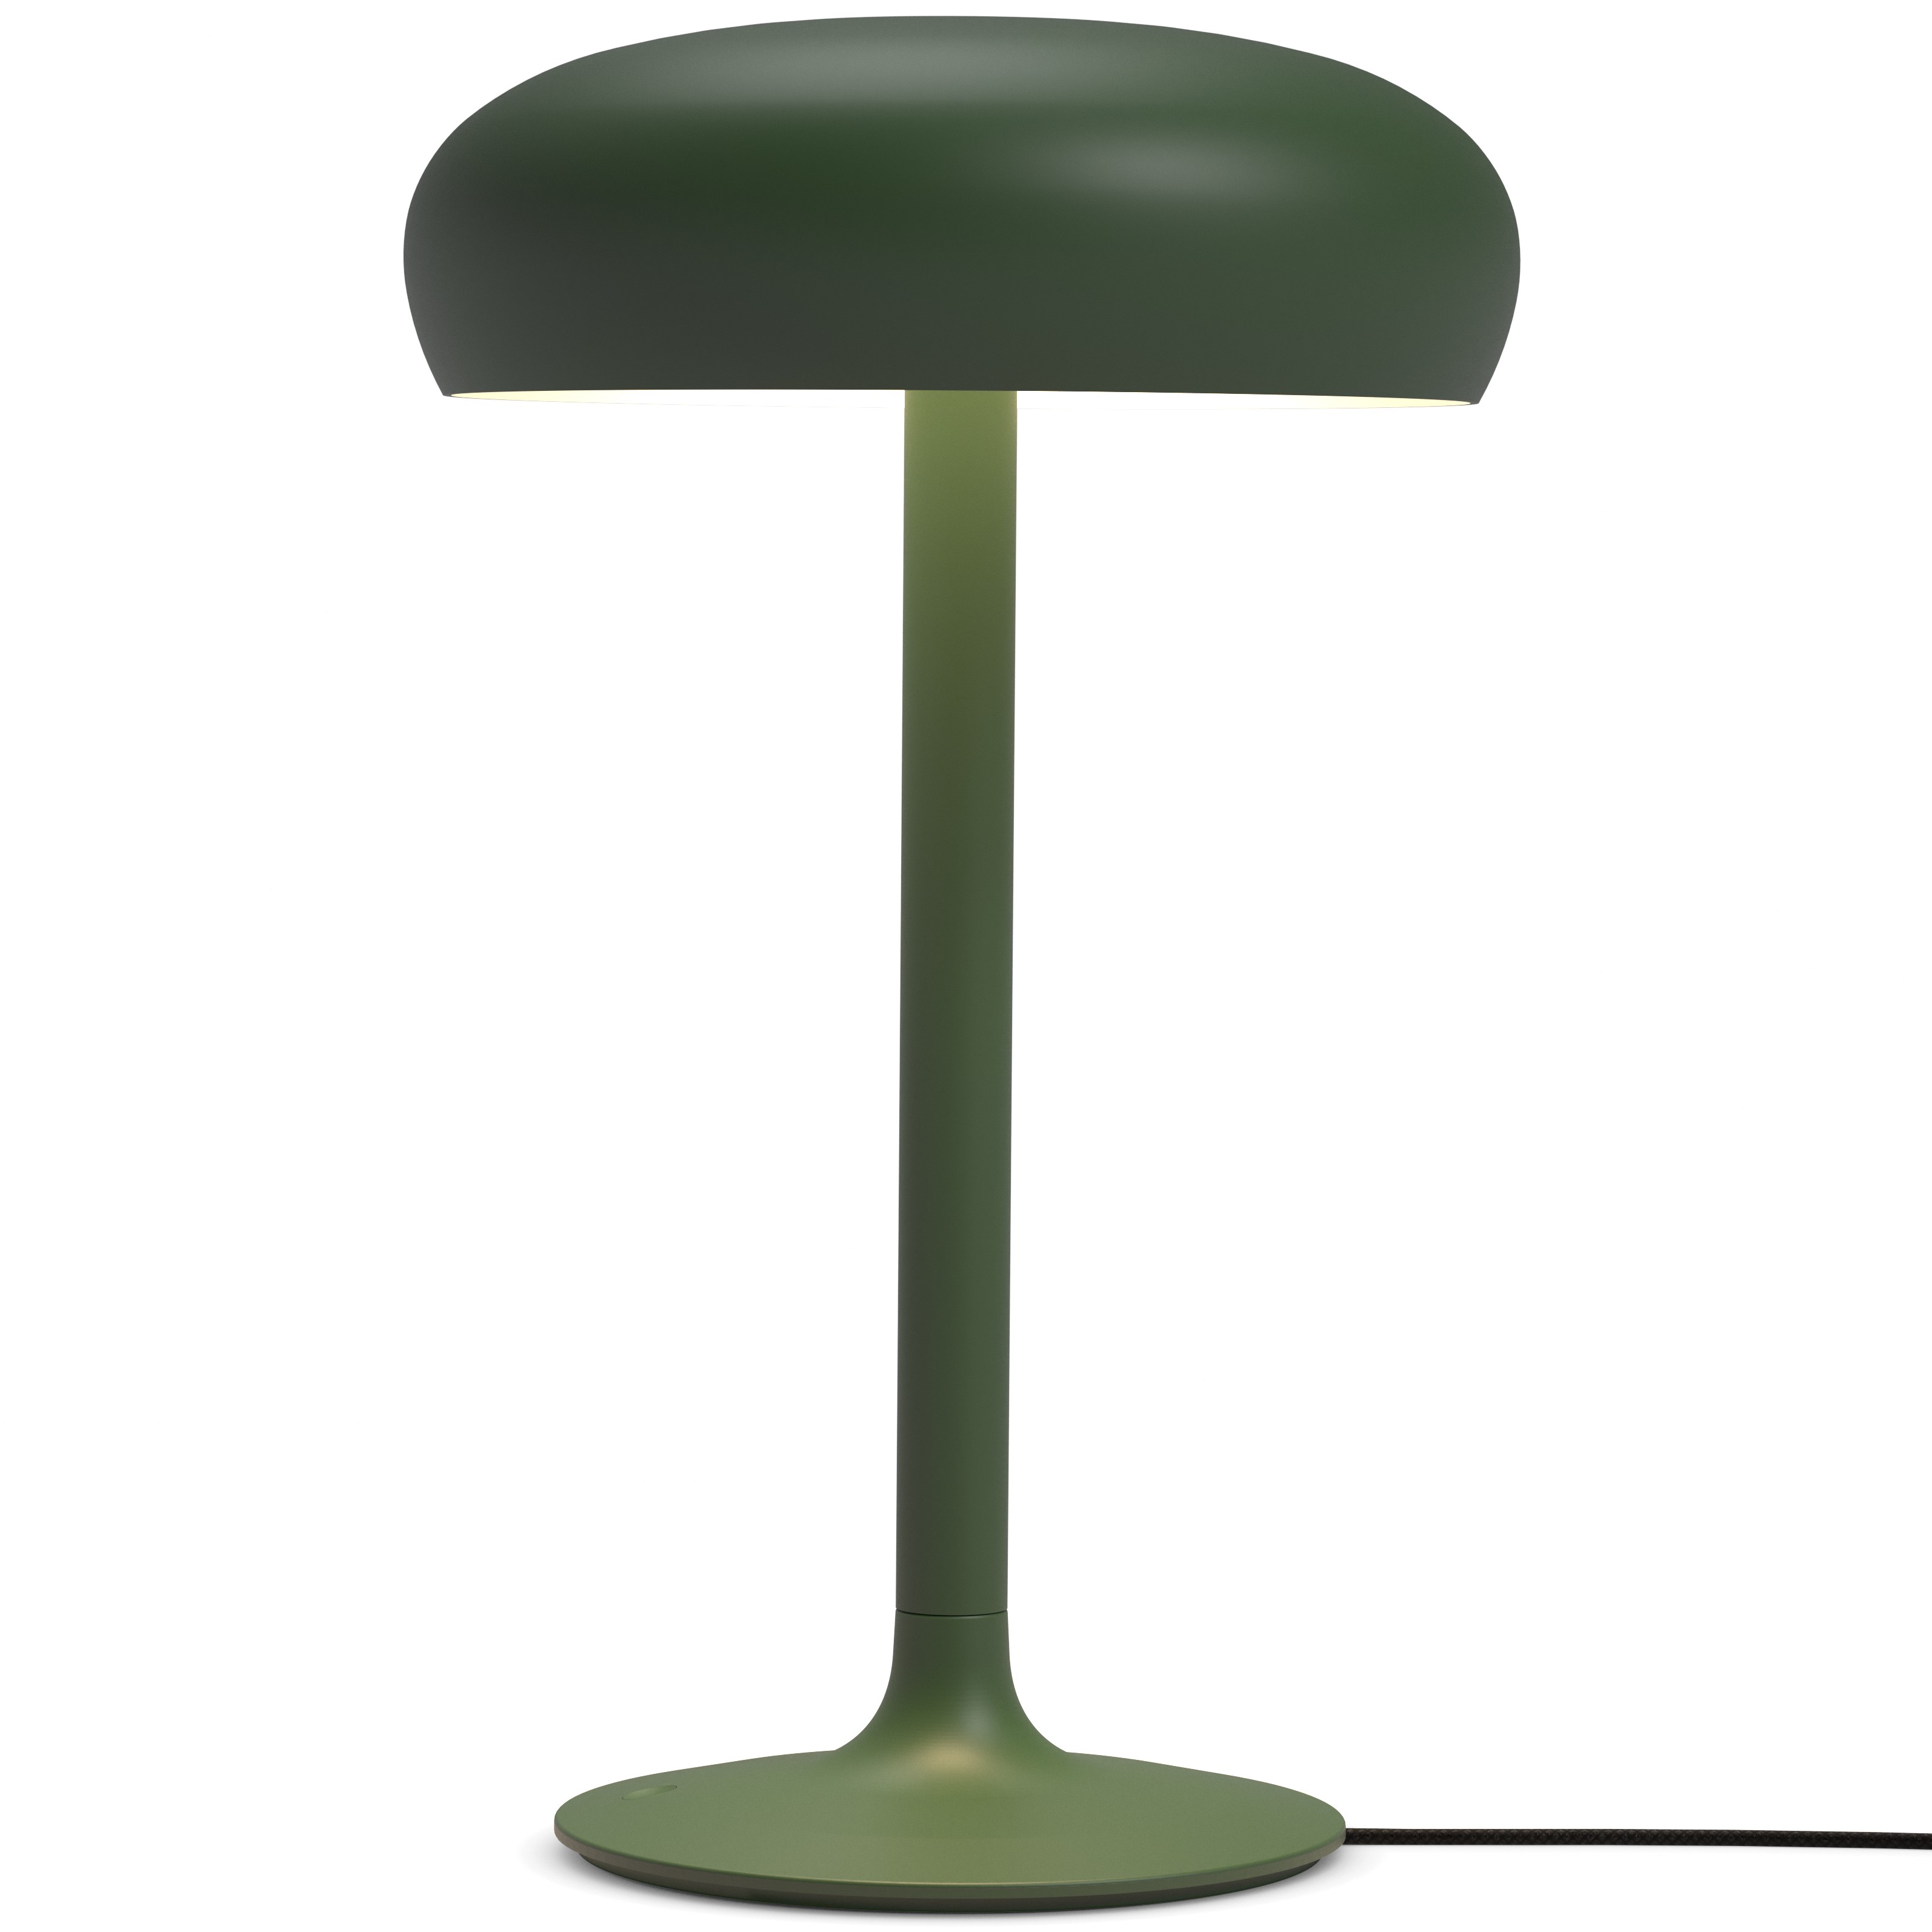 Stolní lampa EMENDO 39 cm, emeraldově zelená, Eva Solo